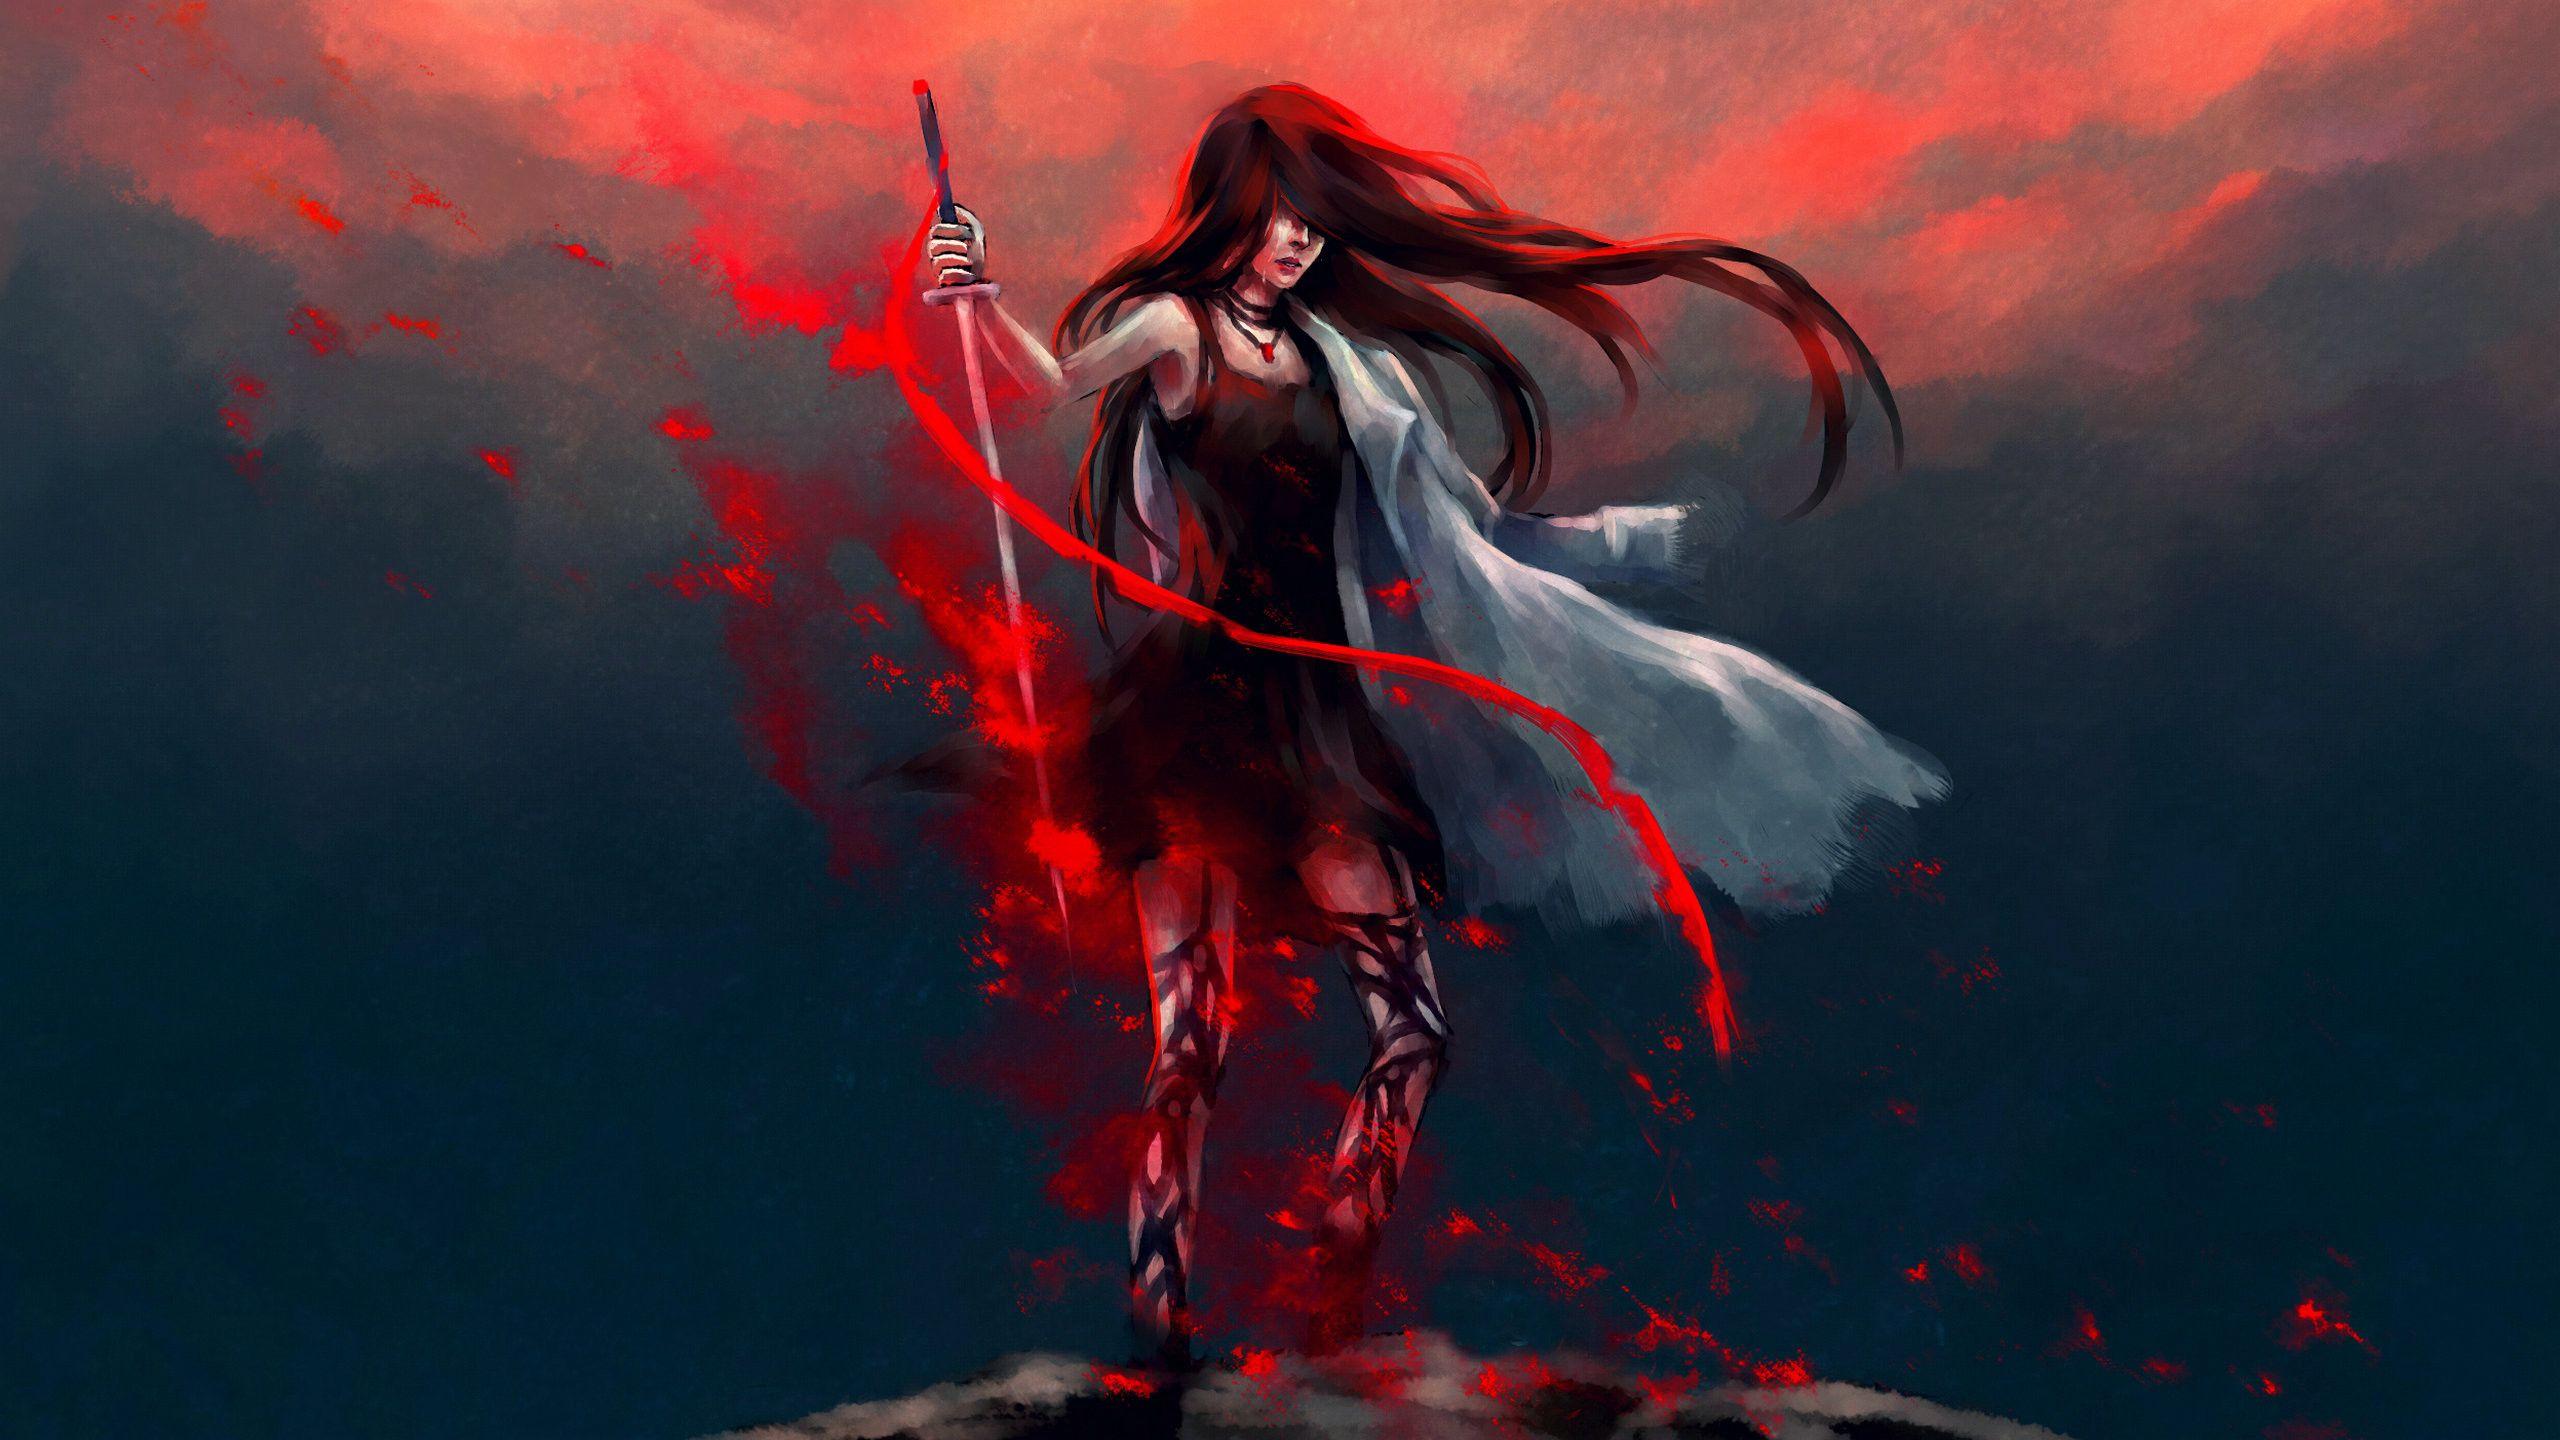 Anime Girl Katana Warrior With Sword, HD Anime, 4k Wallpapers